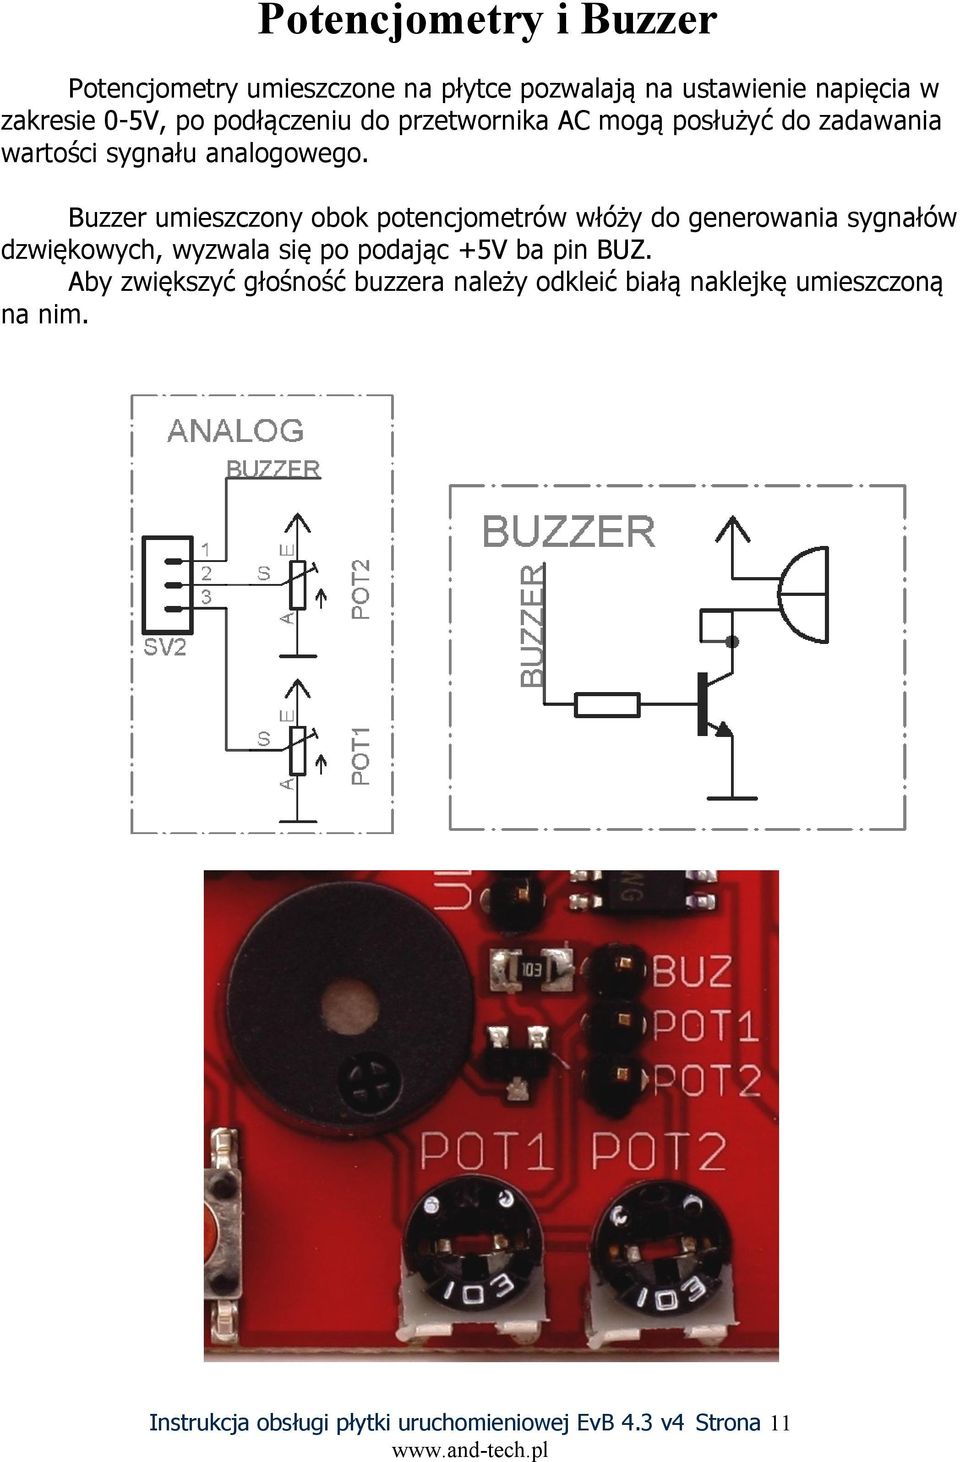 Buzzer umieszczony obok potencjometrów włóży do generowania sygnałów dzwiękowych, wyzwala się po podając +5V ba pin